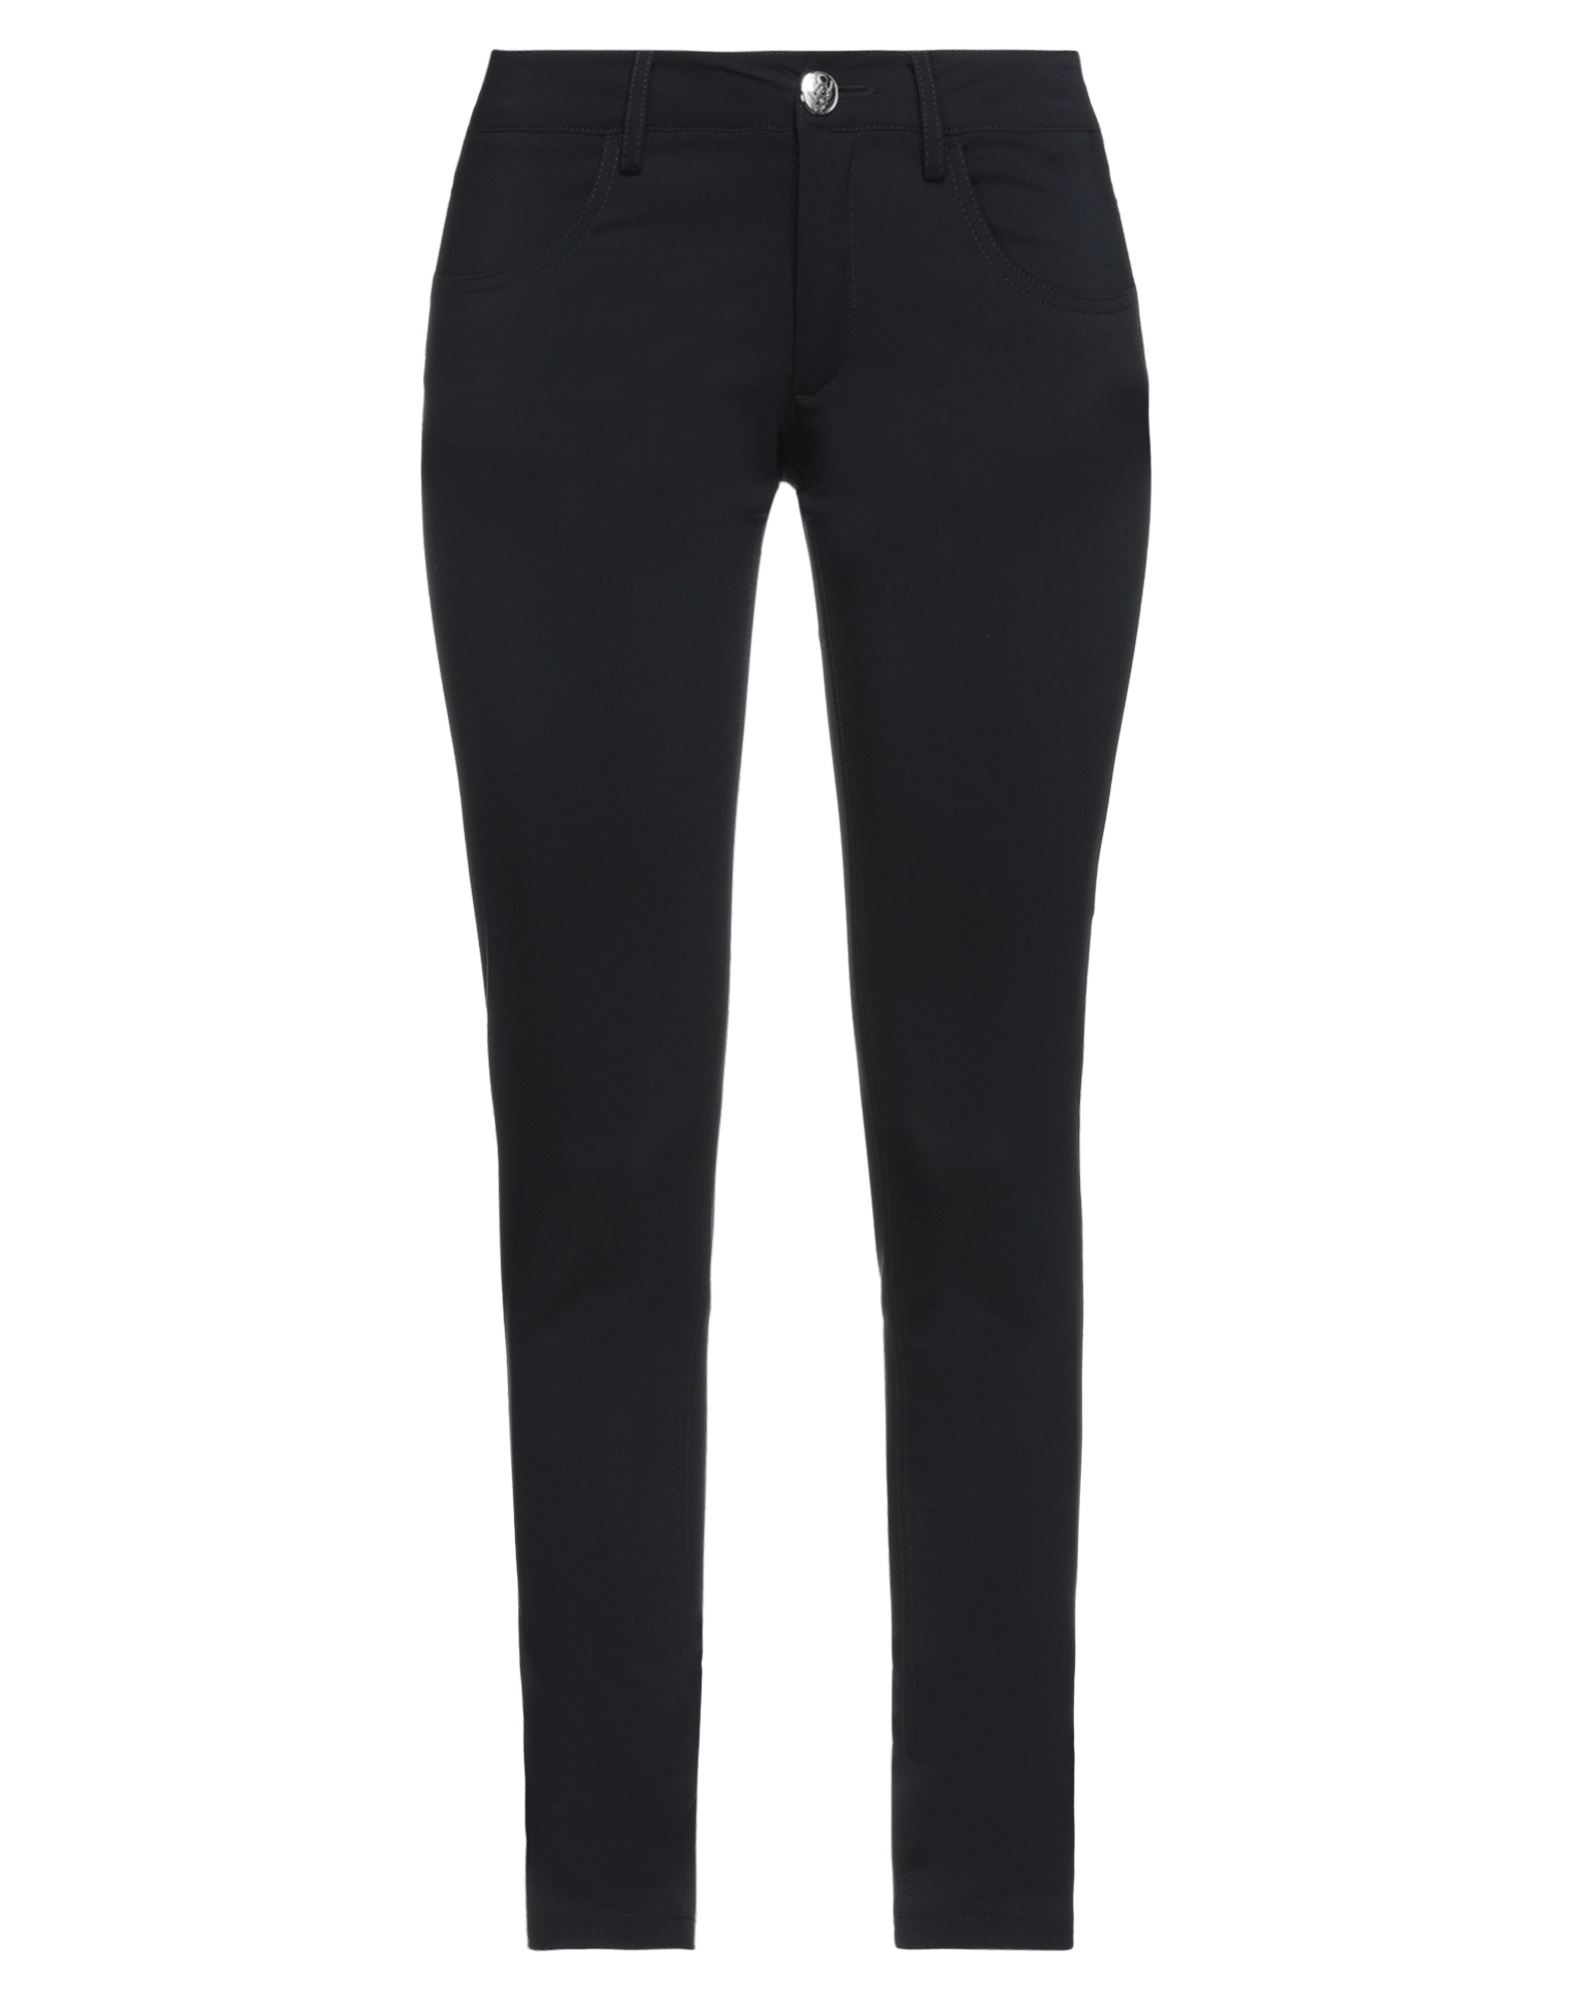 Frankie Morello Woman Pants Black Size 6 Cotton, Polyester, Elastane